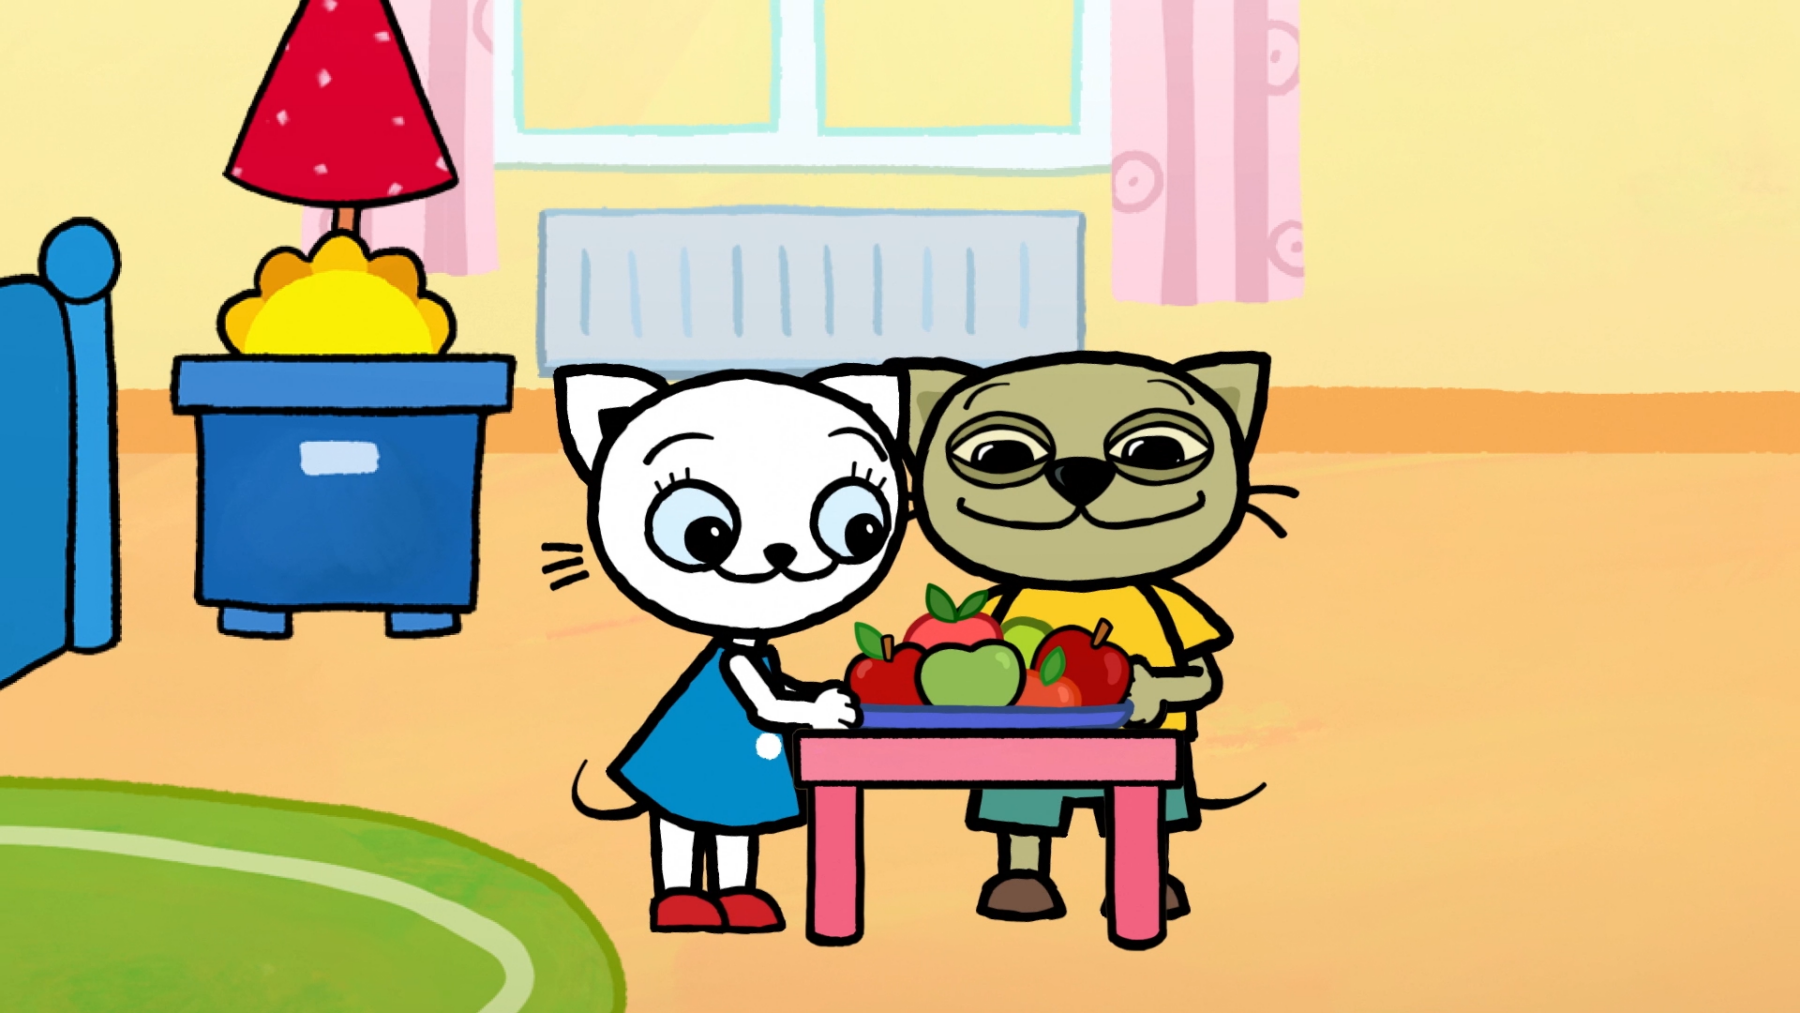 Kadr z bajki z dwoma kotkami przy stole pełnym owoców.